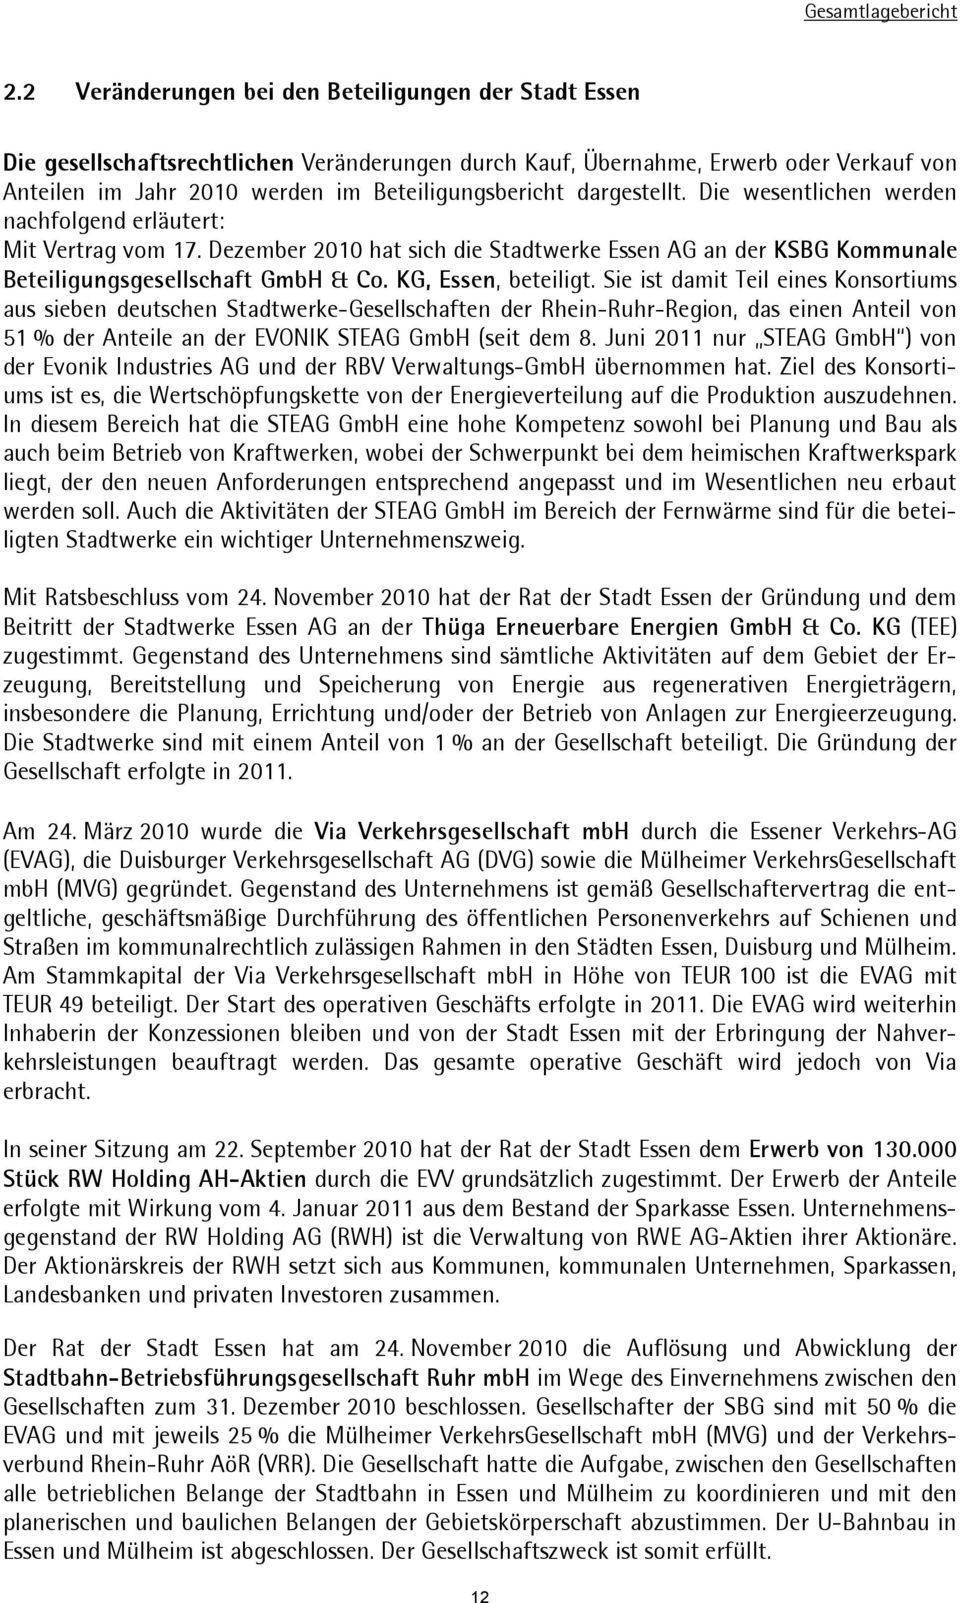 KG,Essen,beteiligt.SieistdamitTeileinesKonsortiums aus sieben deutschen Stadtwerke-Gesellschaften der Rhein-Ruhr-Region, das einen Anteil von 51%derAnteileanderEVONIKSTEAGGmbH(seitdem8.